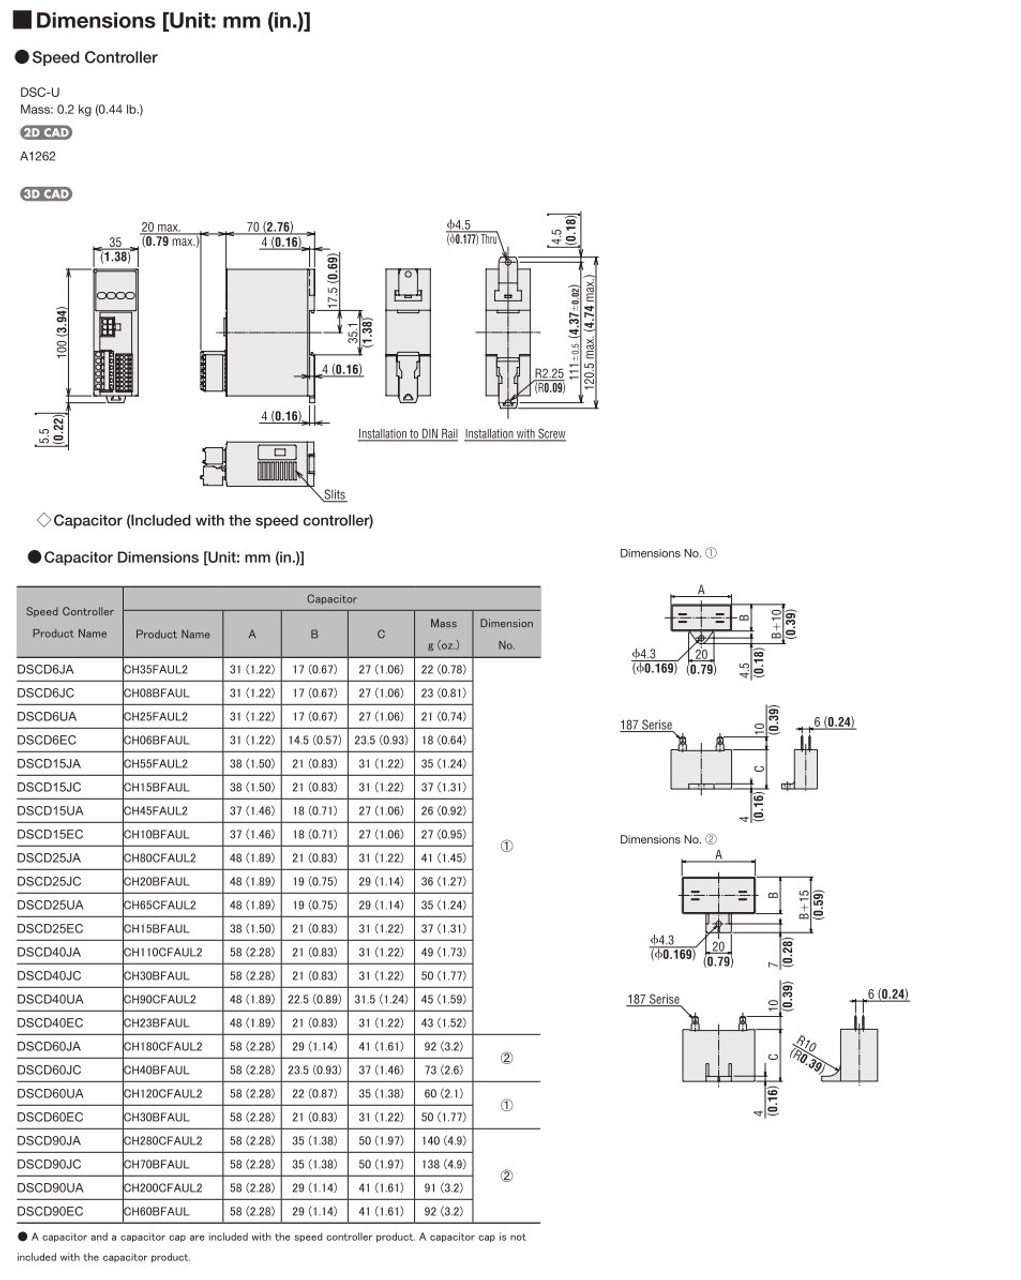 SCM425EC-100A / DSCD25EC - Dimensions